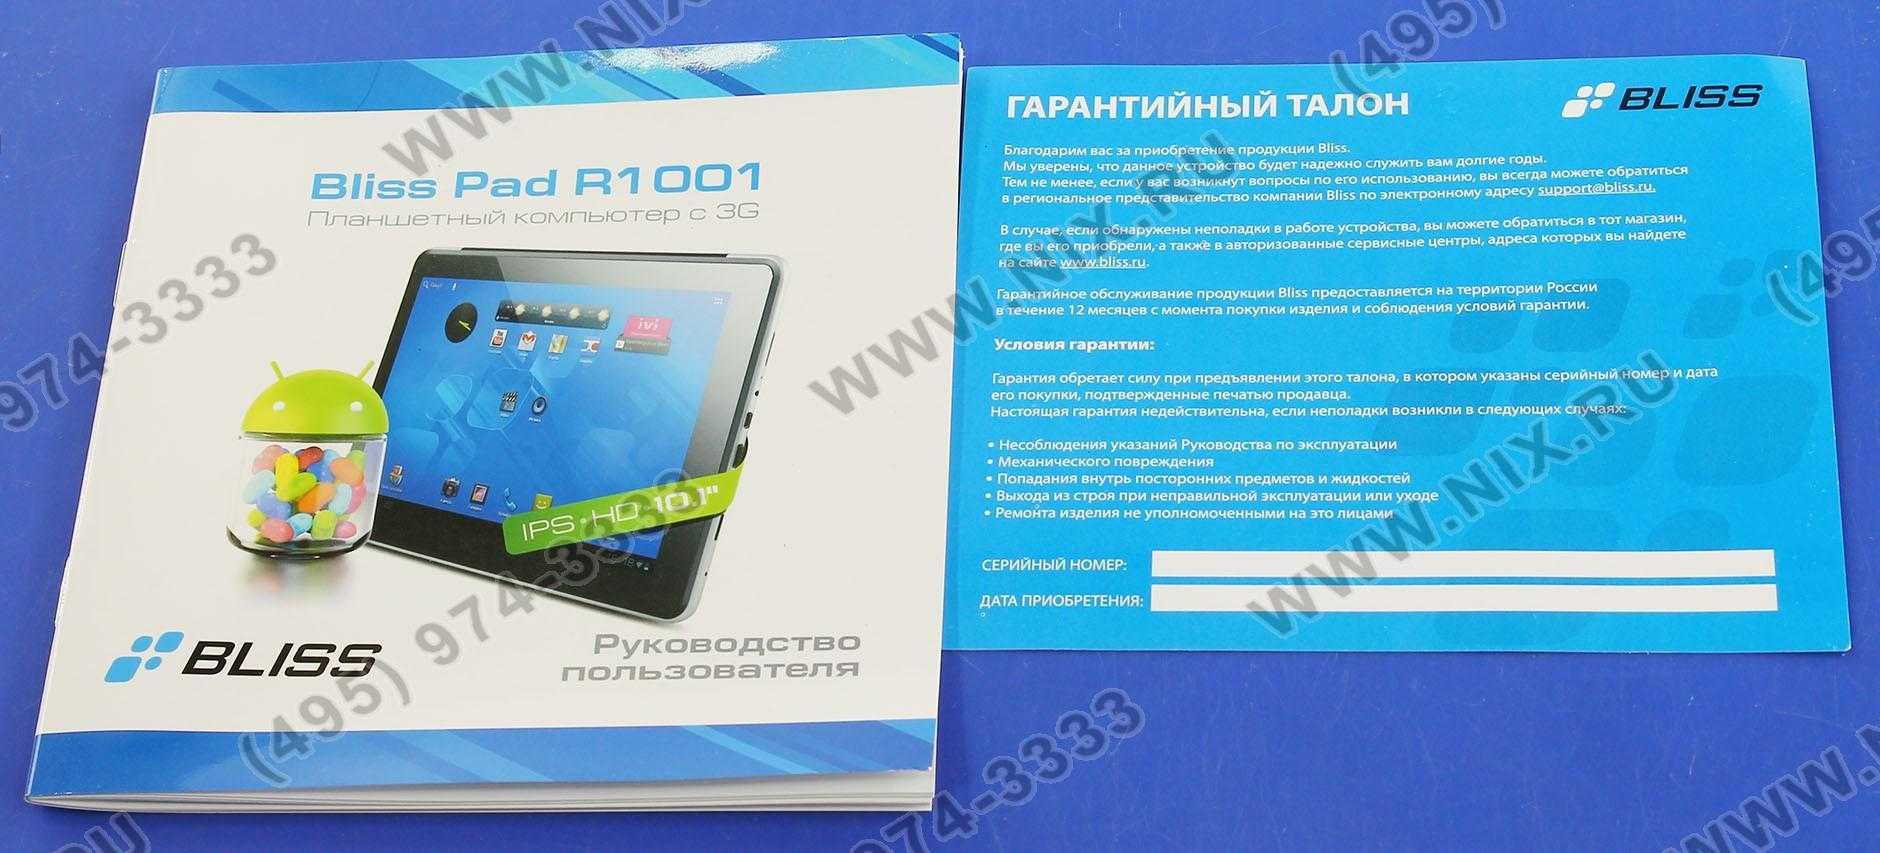 Планшет bliss pad r9720 — купить, цена и характеристики, отзывы